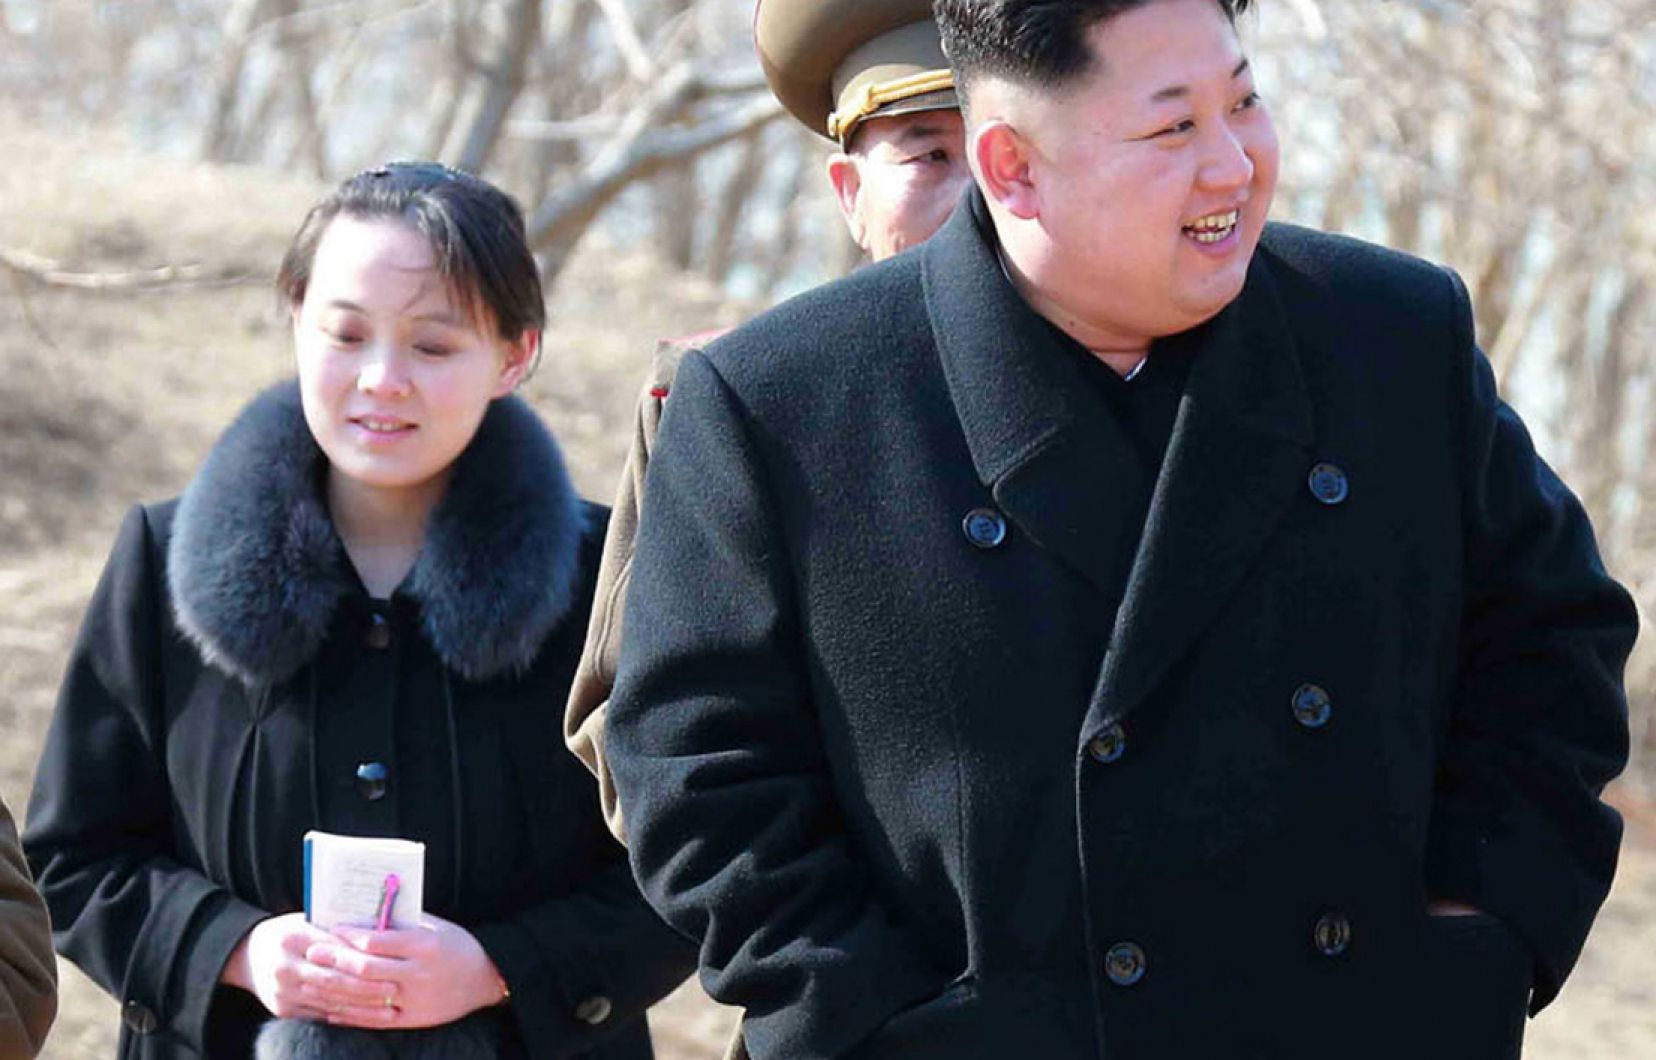 Corée du Nord : Kim Jong-un aurait cédé le pouvoir à sa sœur selon un diplomate sud-coréen